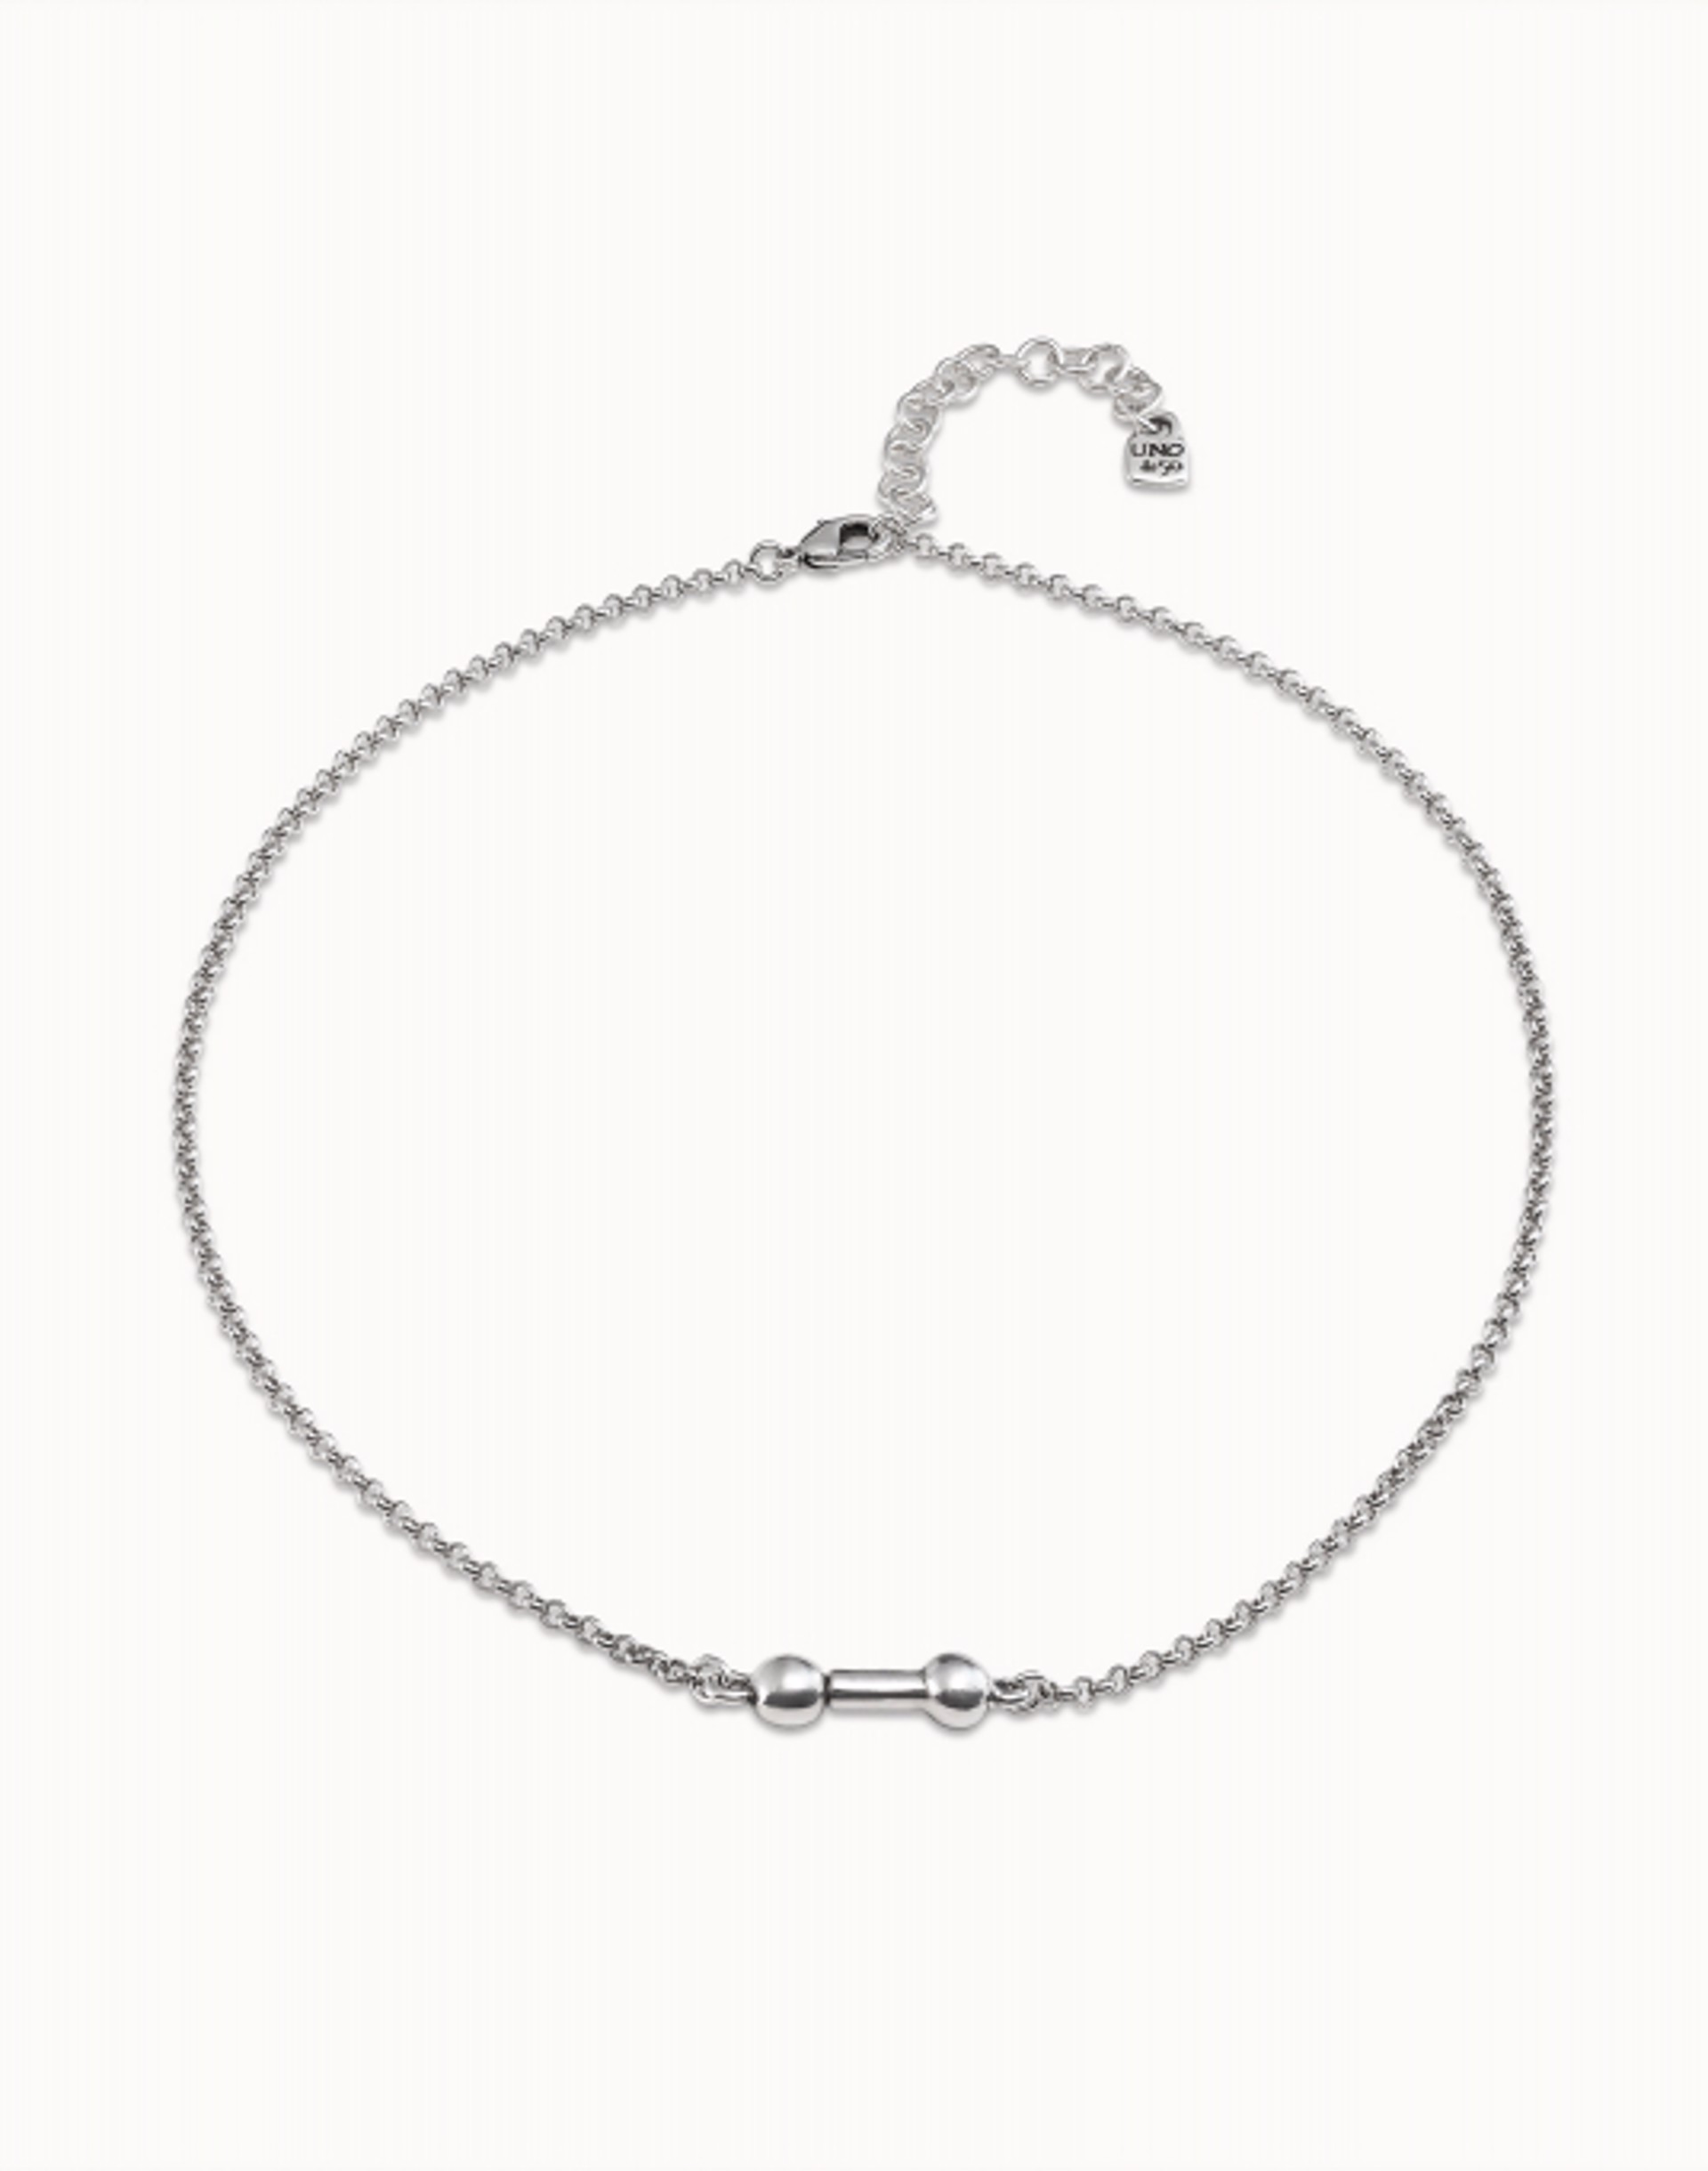 6703 Choose One Necklace by UNO DE 50